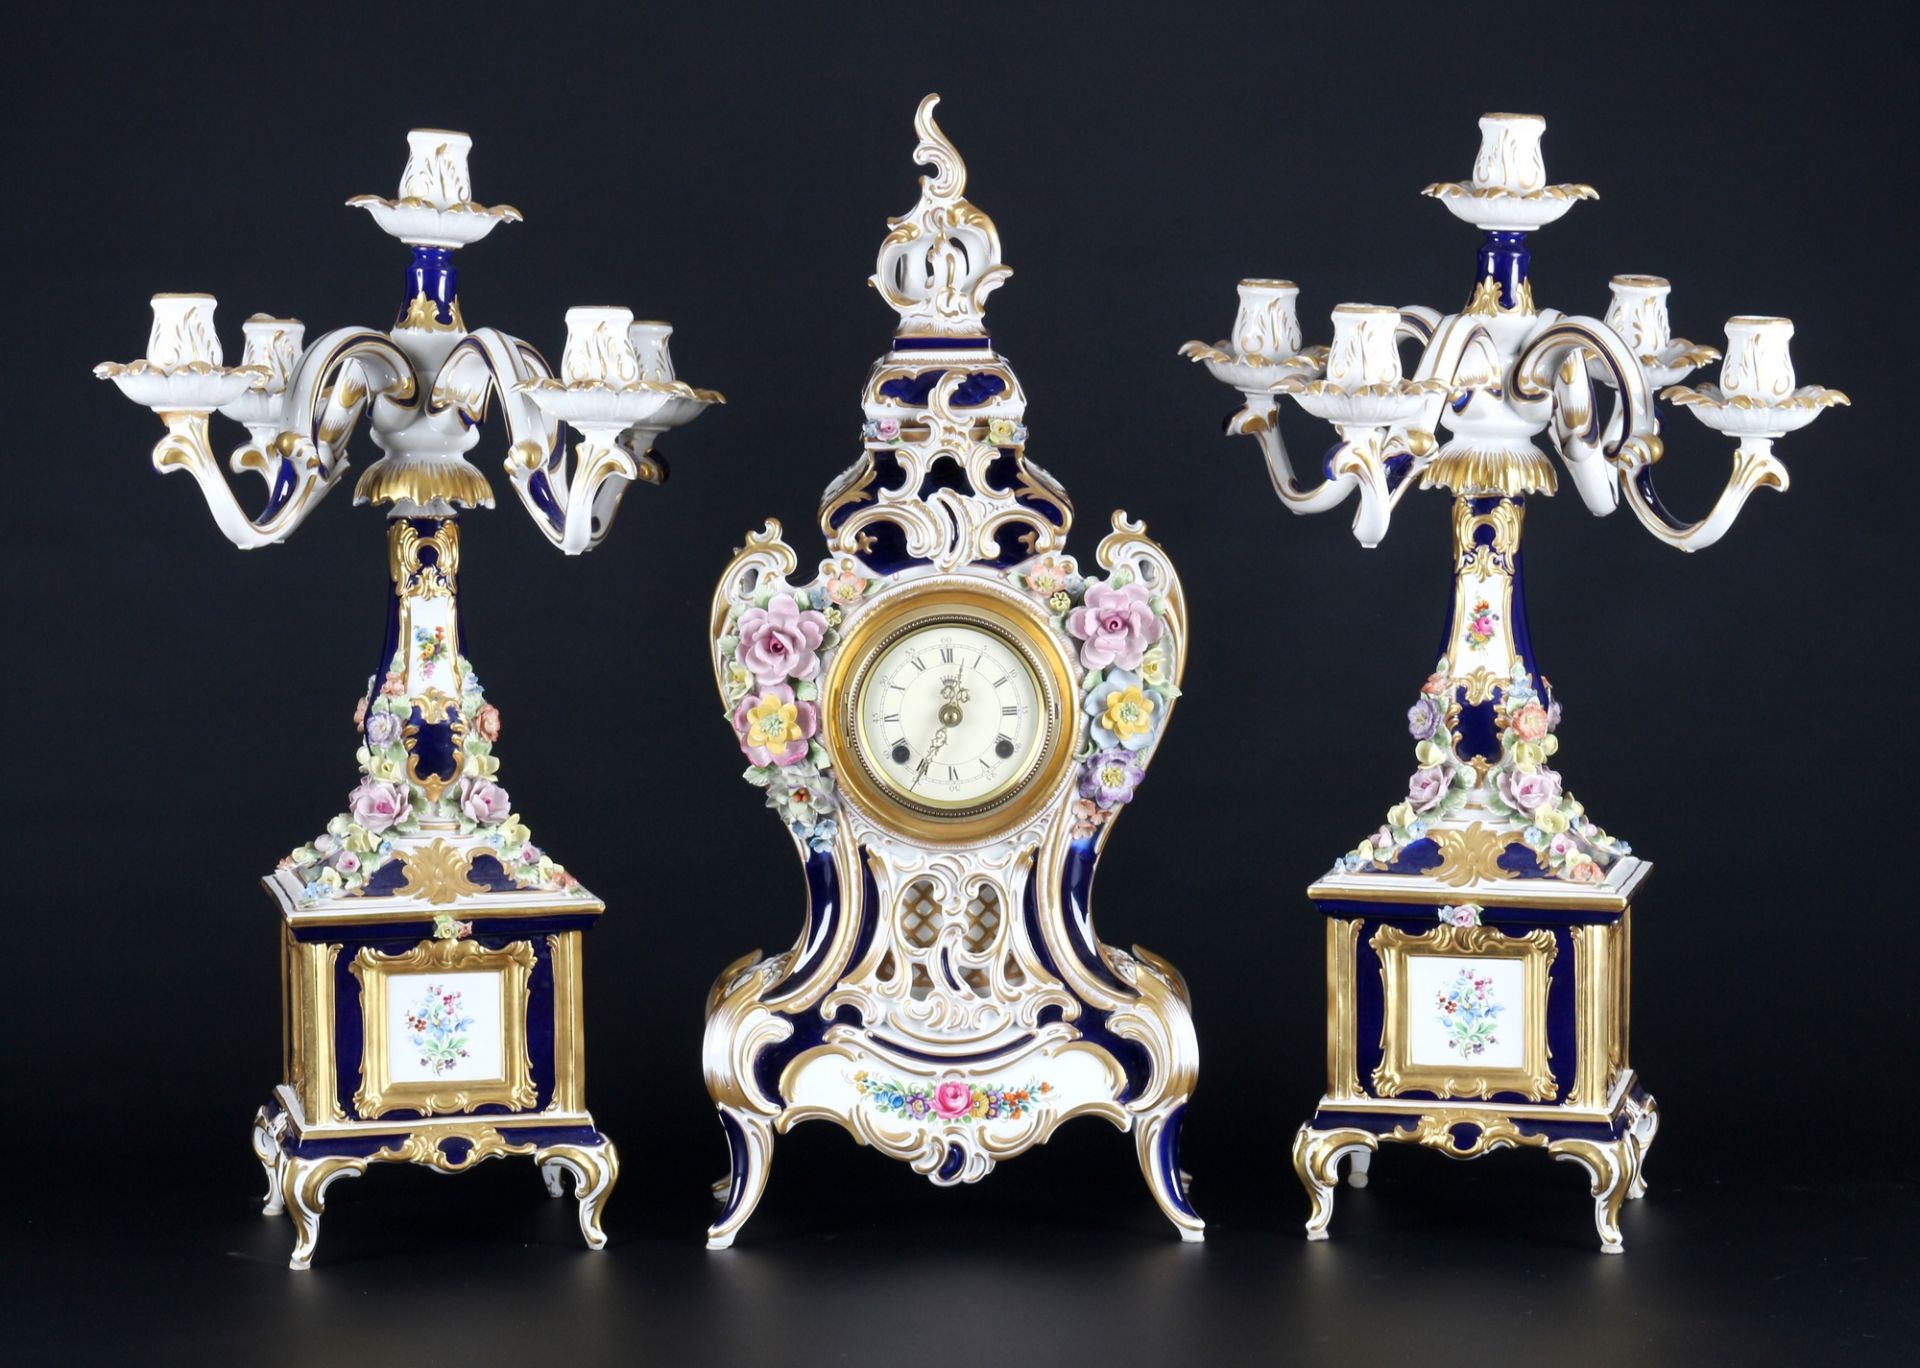 Dresden Sandizell Höffner große Porzellan Kaminuhr mit Kerzenständern, porcelain mantel clock